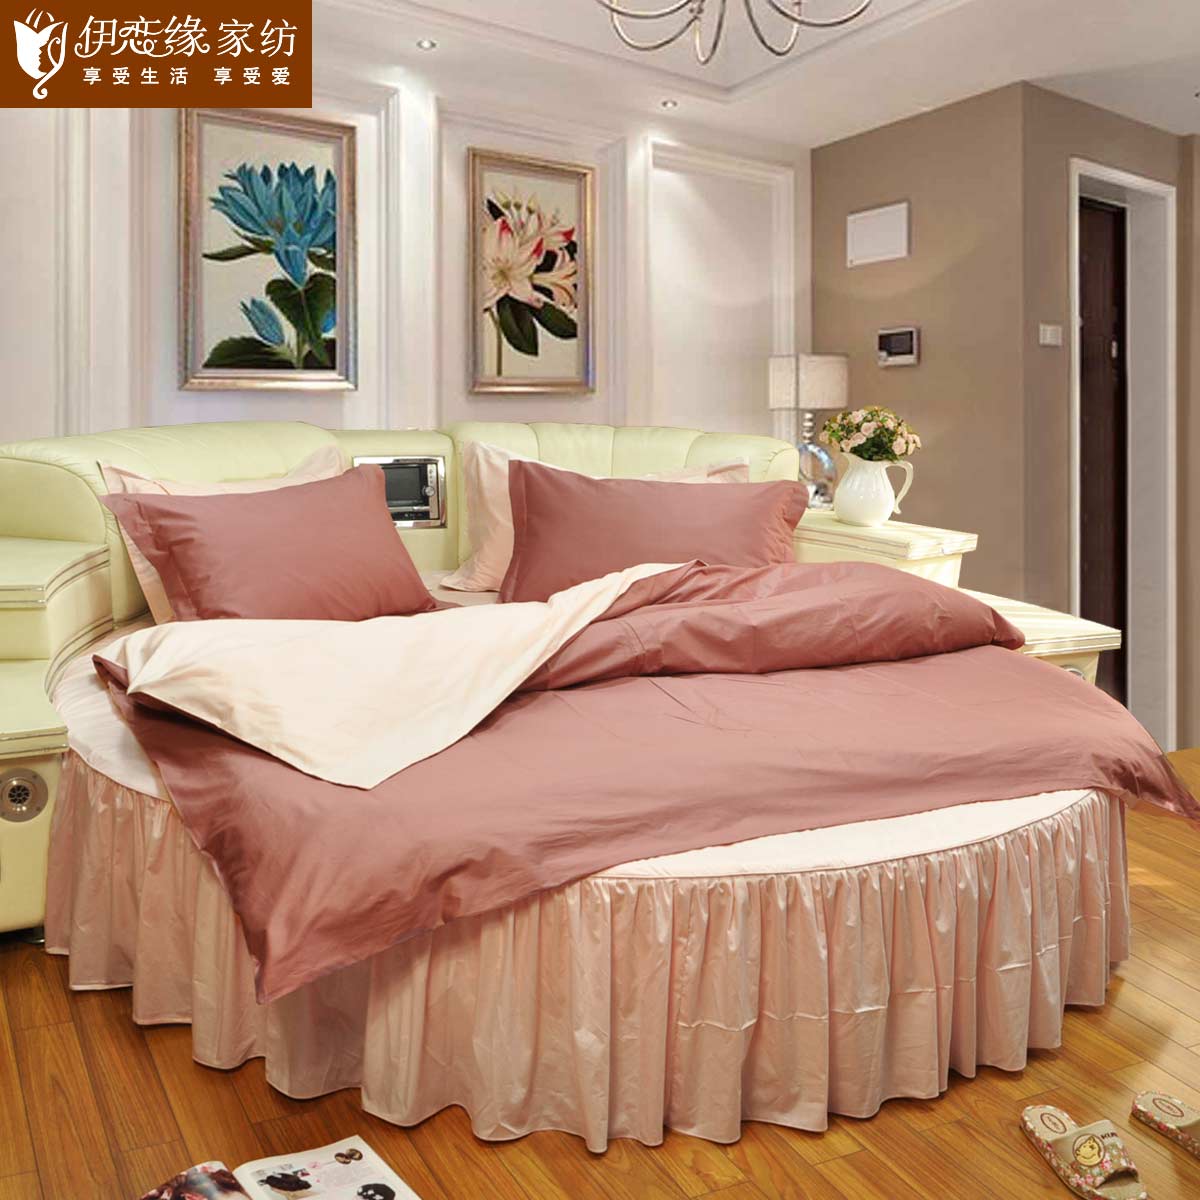 15新款 全棉贡缎纯色圆床床上用品 素色双拼圆床裙床罩四件套定制